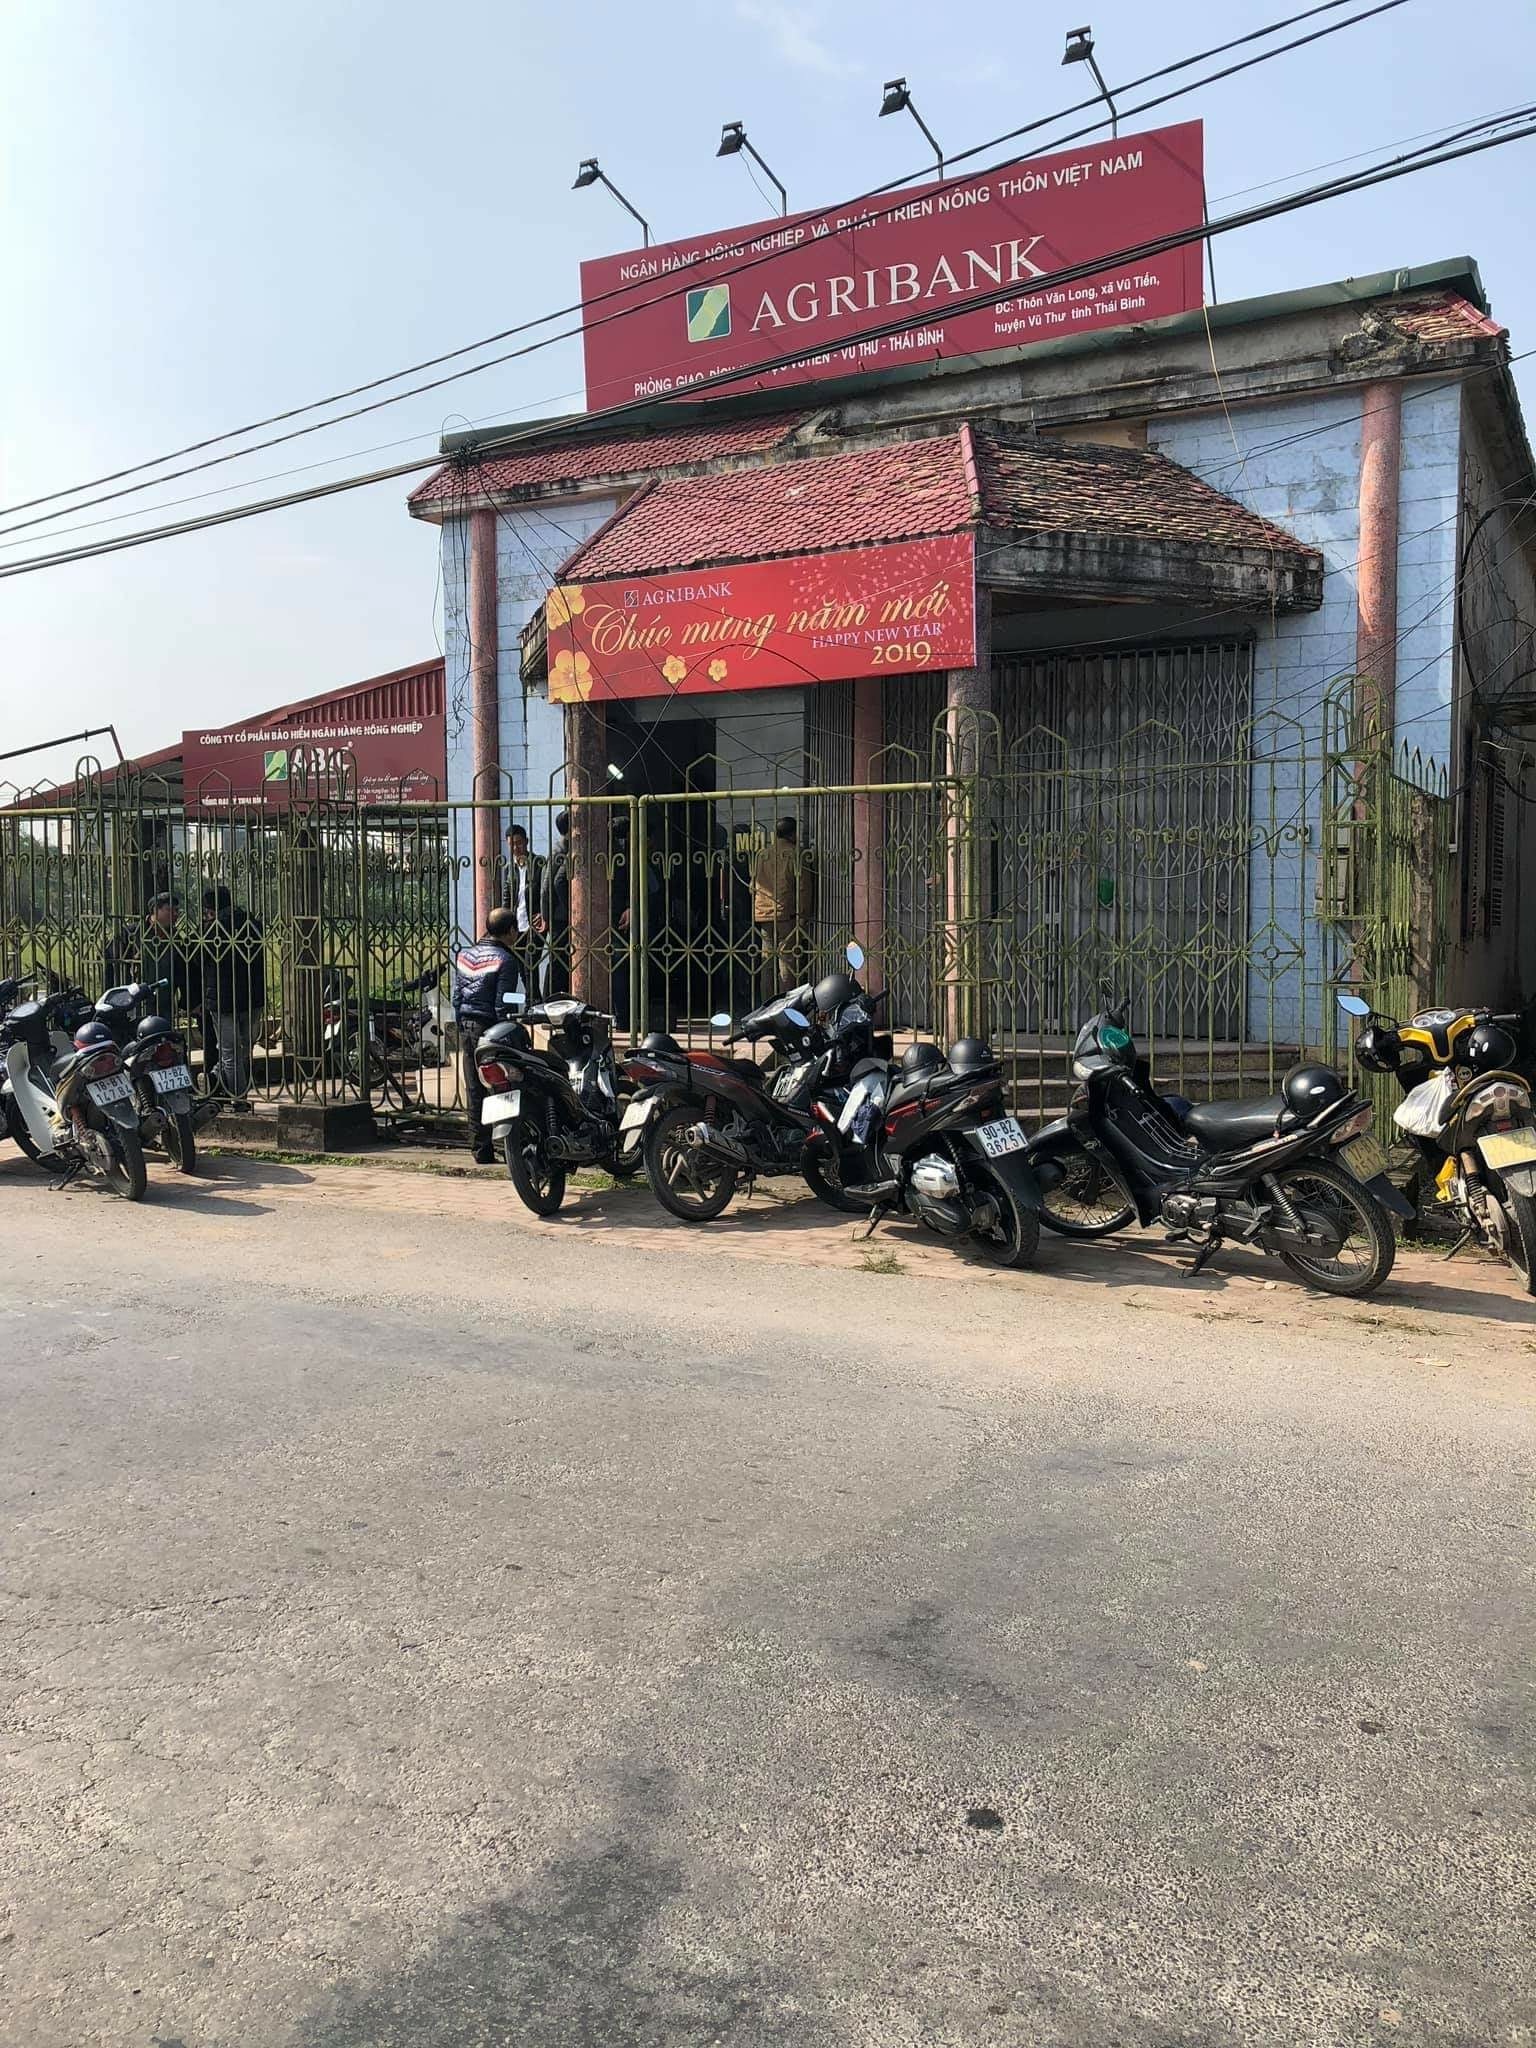 Bắt nghi phạm cướp ngân hàng ở Thái Bình, chém người truy đuổi-1